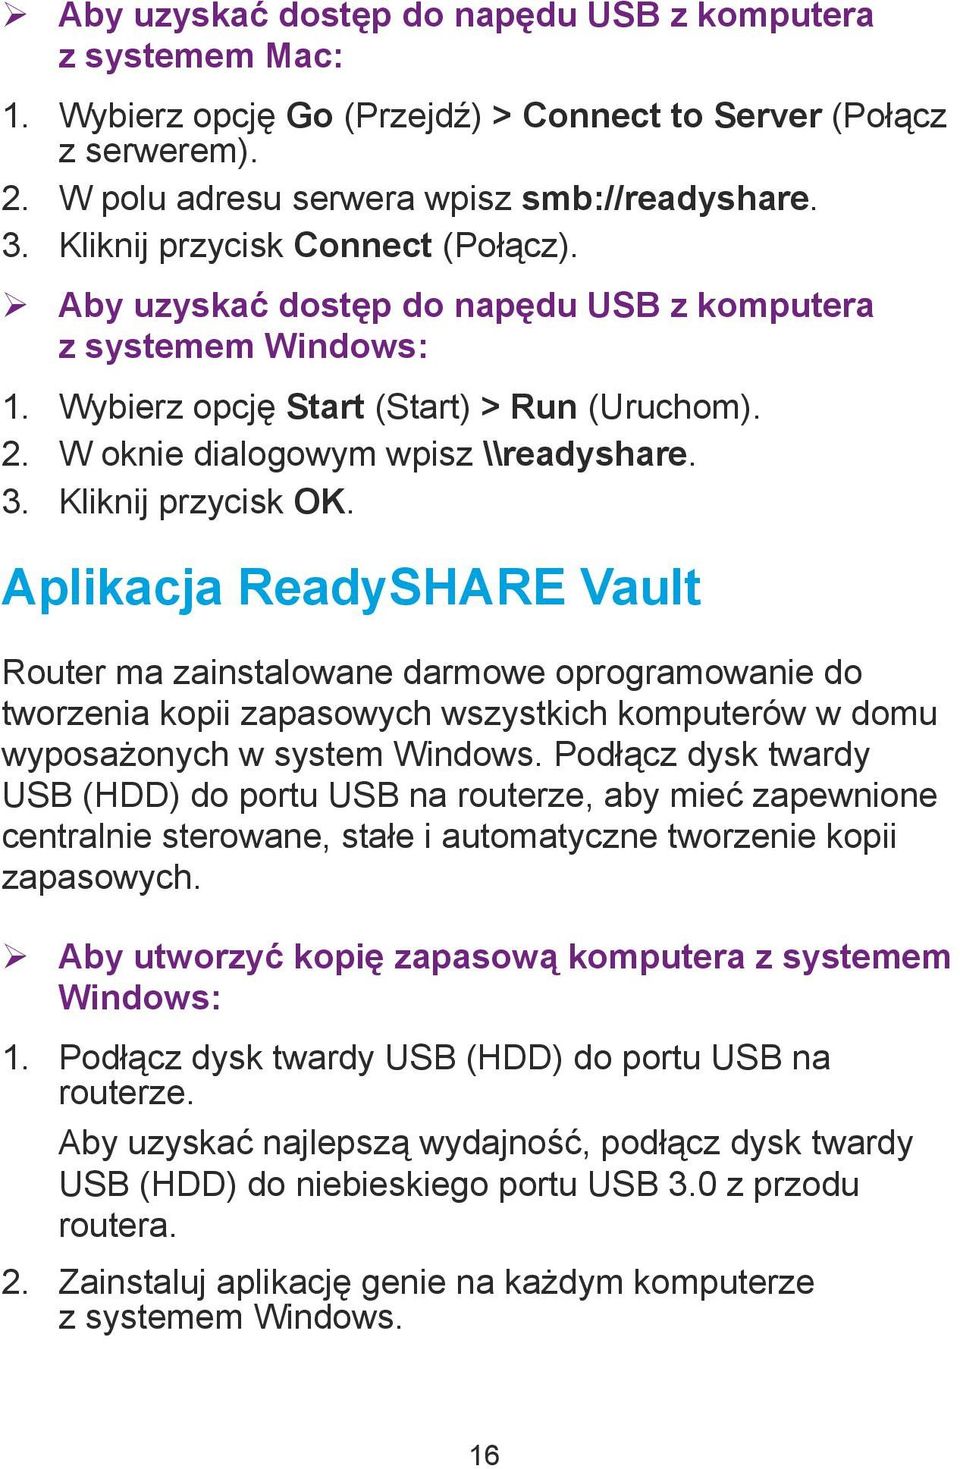 Kliknij przycisk OK. Aplikacja ReadySHARE Vault Router ma zainstalowane darmowe oprogramowanie do tworzenia kopii zapasowych wszystkich komputerów w domu wyposażonych w system Windows.